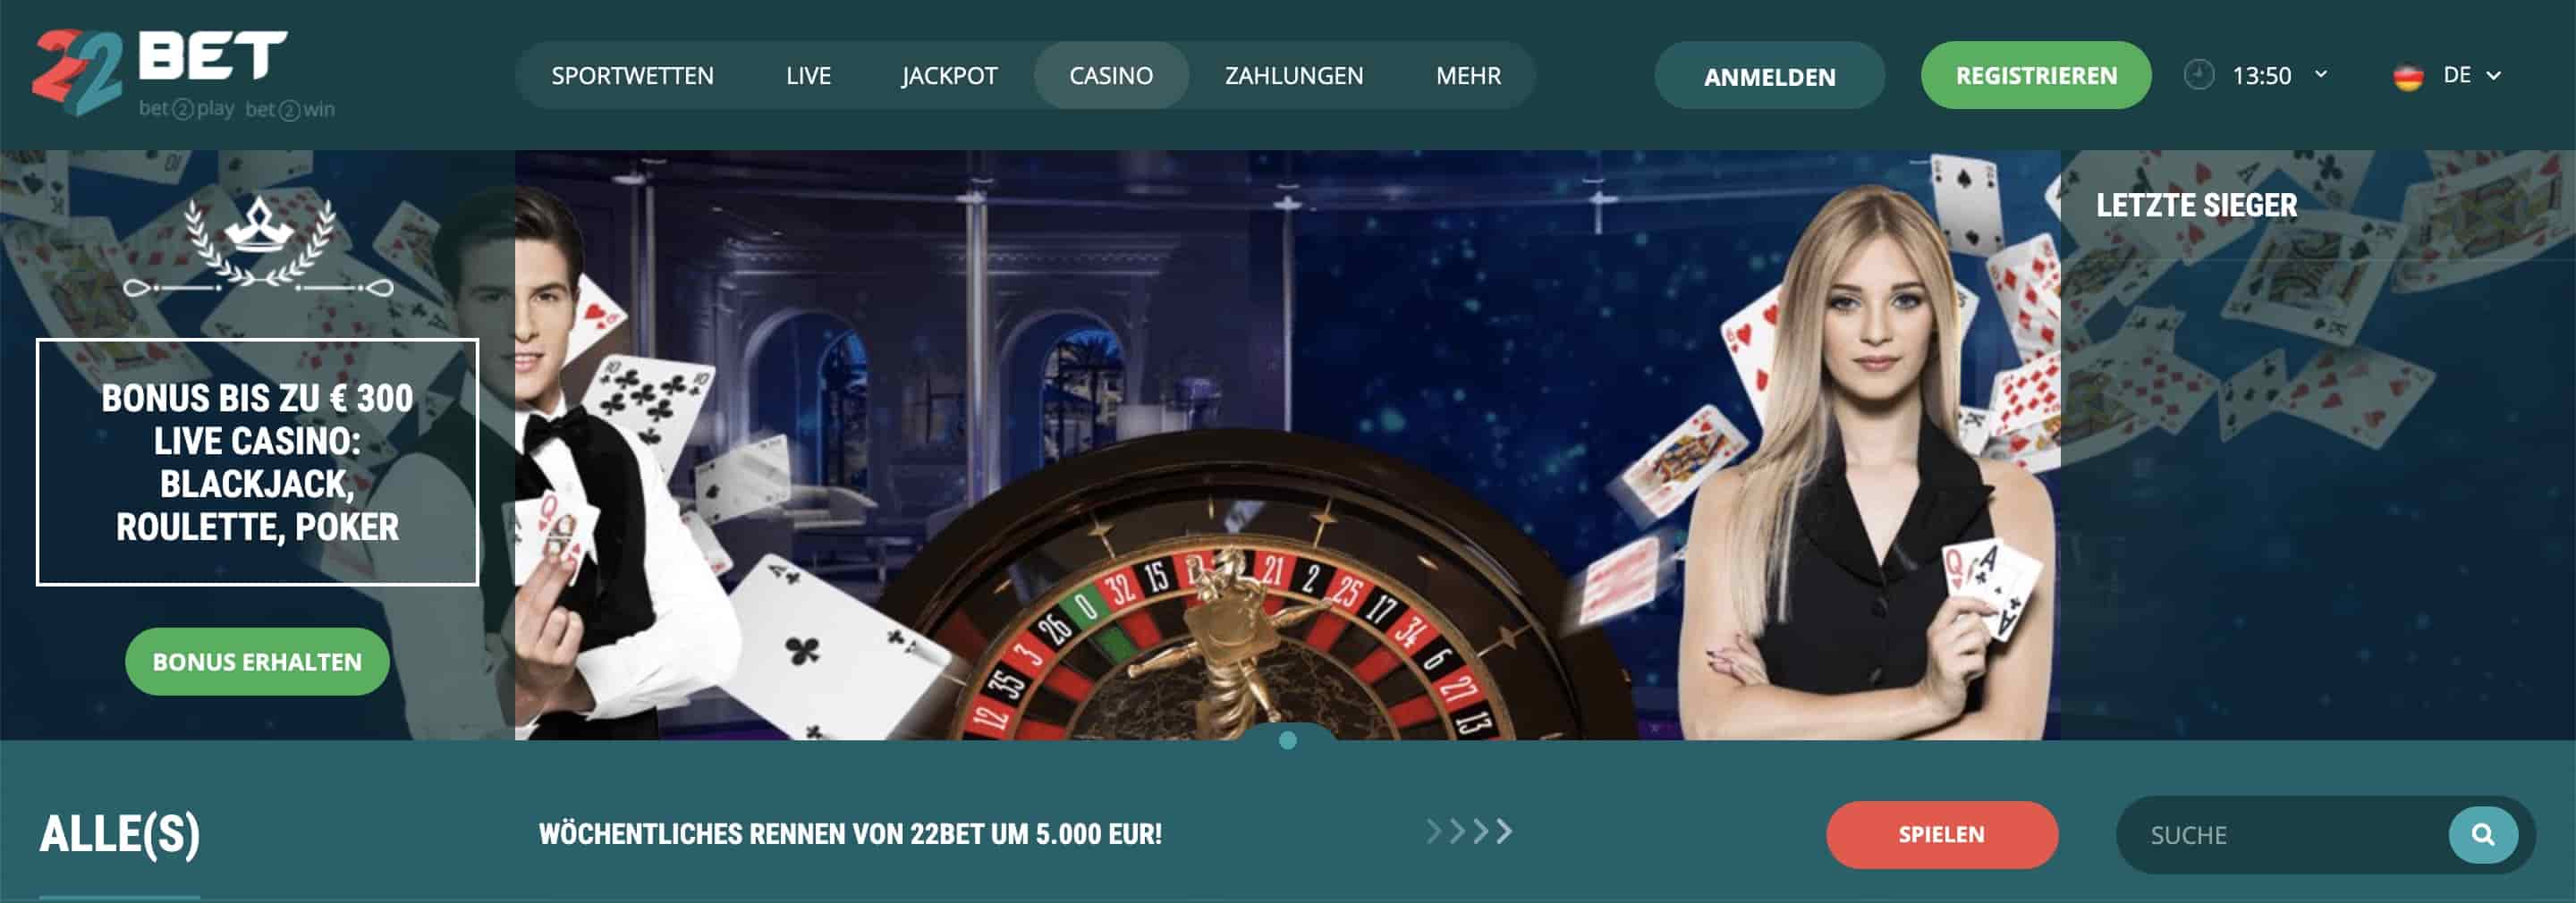 22bet casino homepage scrennshot